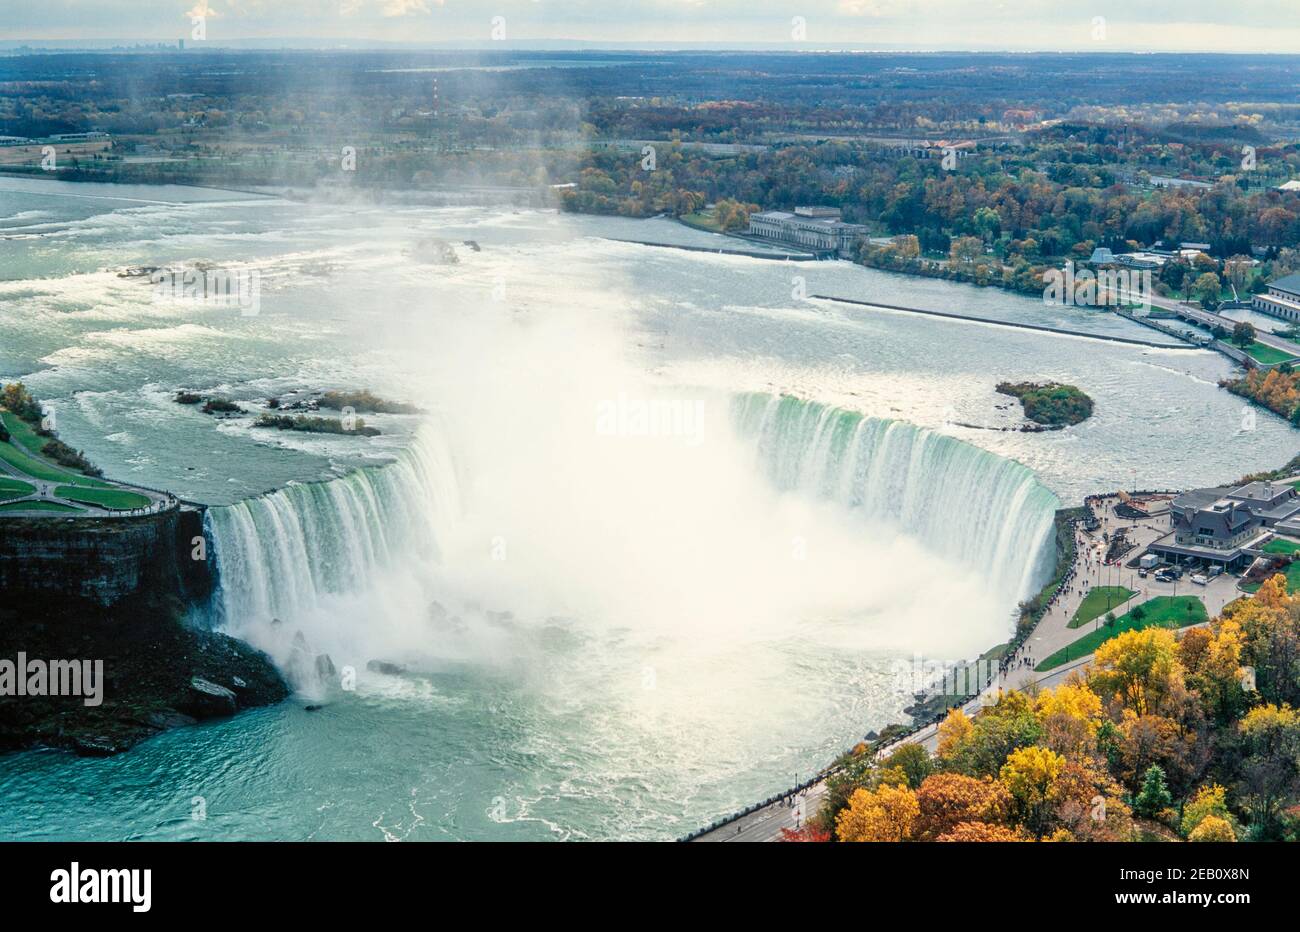 1995 Canada Niagara Falls est une ville de l'Ontario, au Canada. Elle se trouve sur la rive ouest de la rivière Niagara, dans la région du Golden Horseshoe, dans le sud de l'Ontario, et la rivière Niagara traverse les chutes Niagara à cet endroit. Les chutes canadiennes, également connues sous le nom de chutes canadiennes, sont à cheval sur la frontière internationale du Canada et des États-Unis. Vue aérienne des chutes du Niagara ou de la chute en fer à cheval depuis la tour Skylon, une tour d'observation qui surplombe les chutes en fer à cheval et une plate-forme d'observation touristique Niagara Falls, Ontario, Canada Banque D'Images